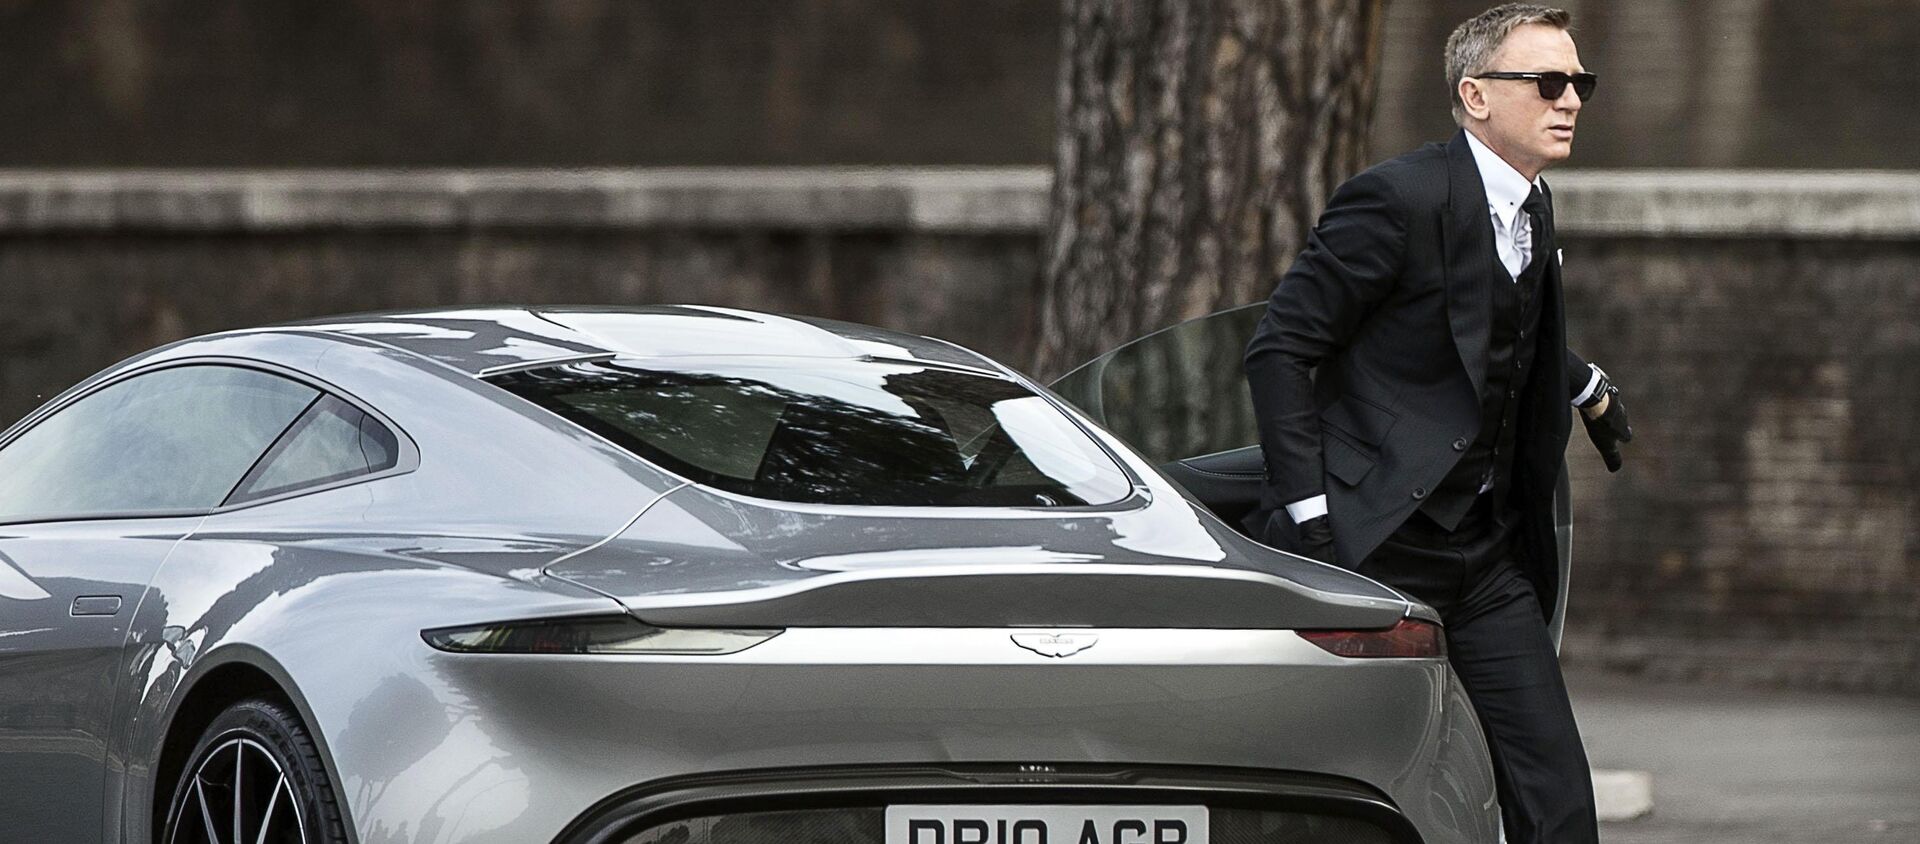 Daniel Craig, conocido por encarnar el personaje de James Bond - Sputnik Mundo, 1920, 27.09.2020